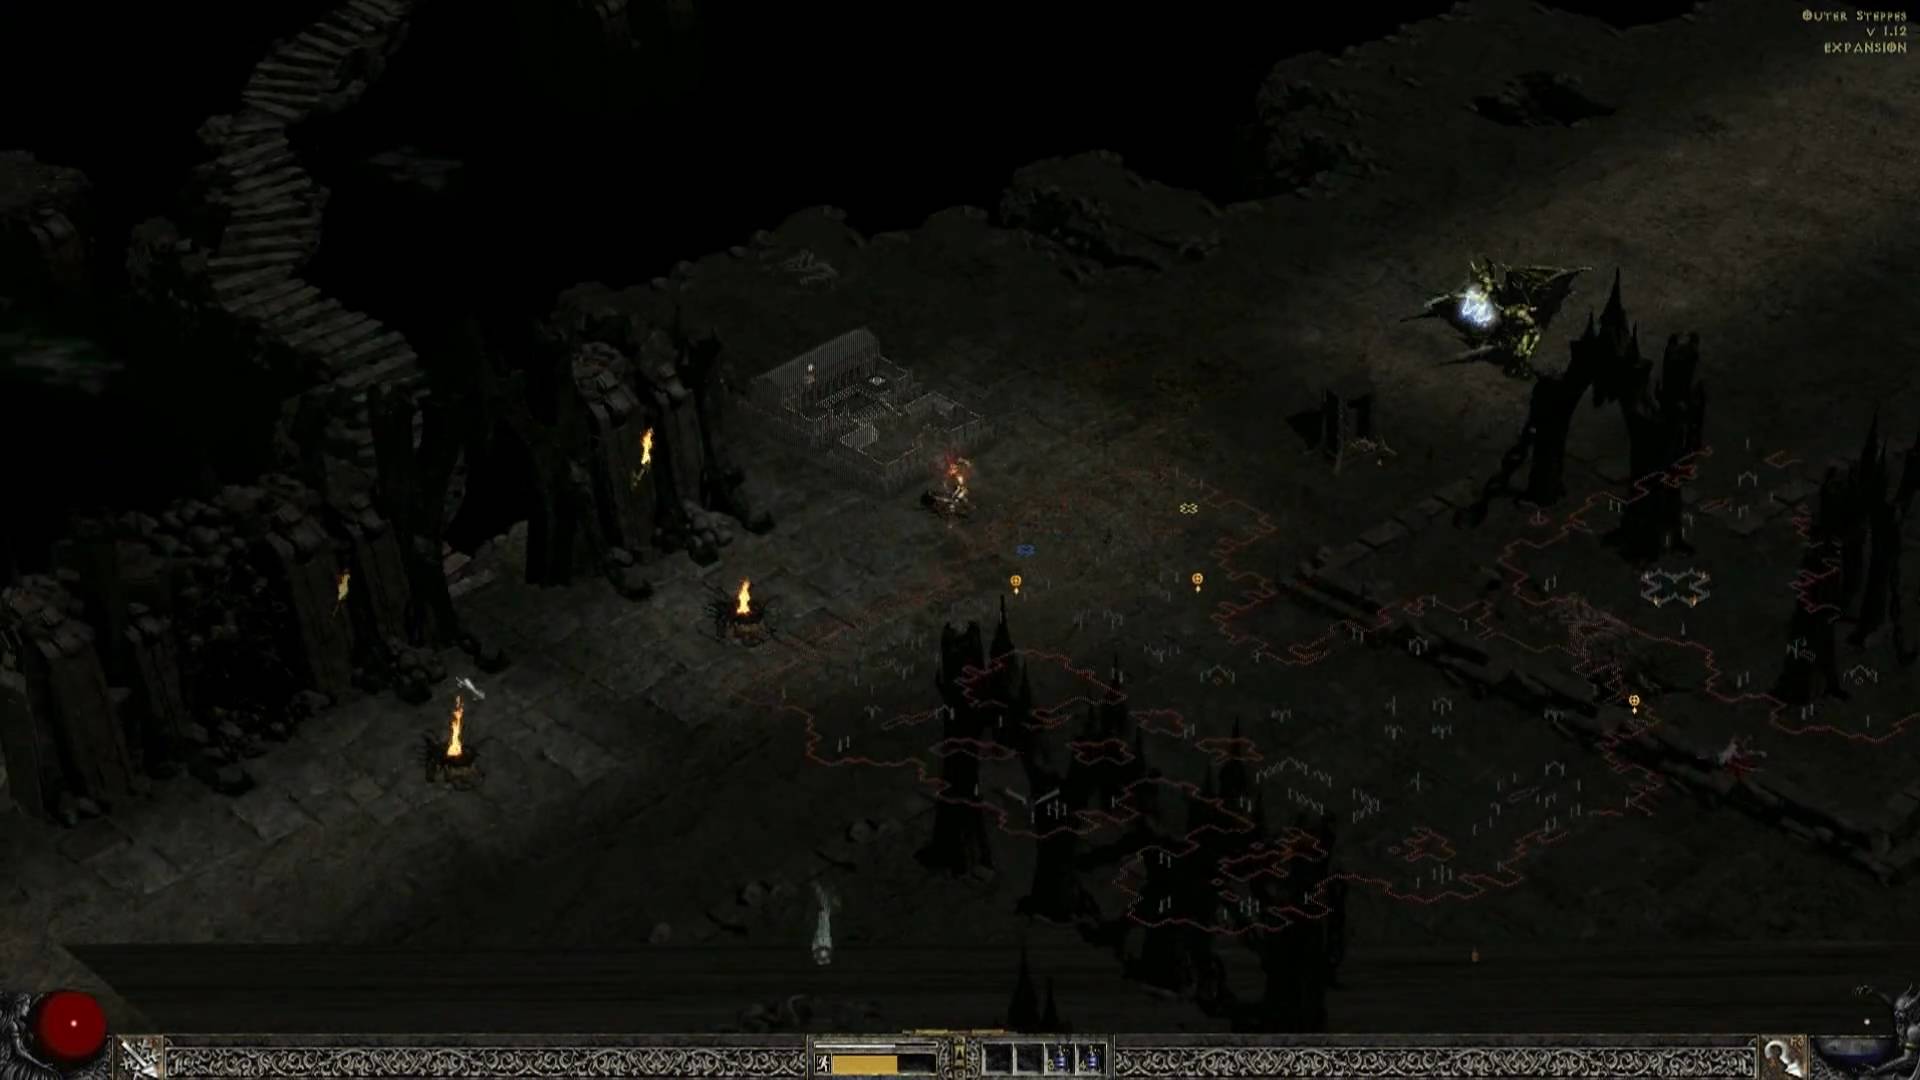 Diablo II in HD 1920x1080 - amaaaaaazing! - YouTube